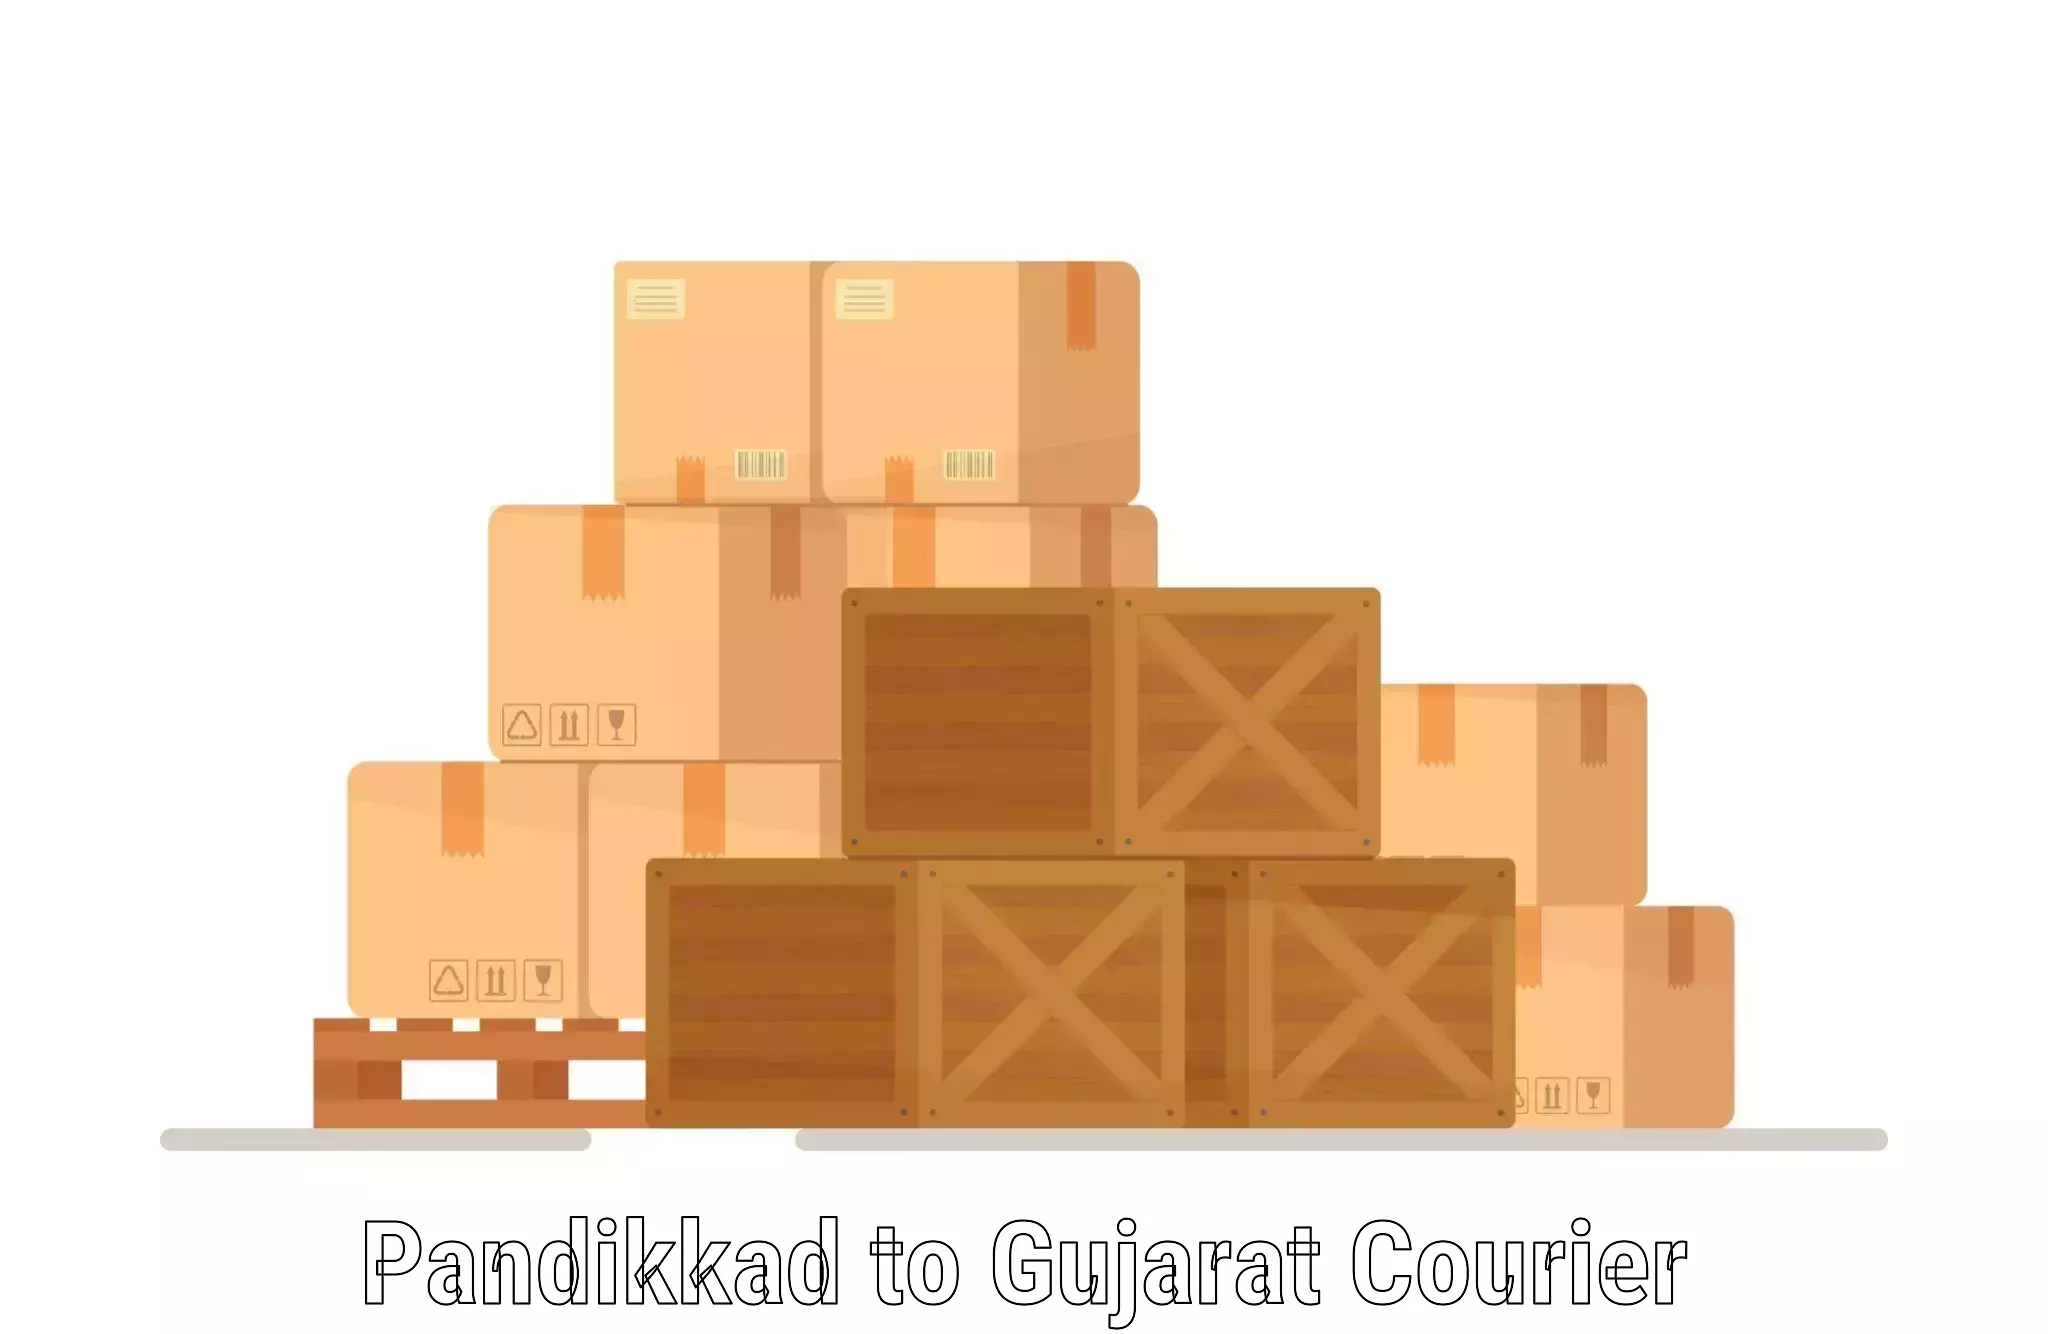 Automated shipping Pandikkad to Gujarat